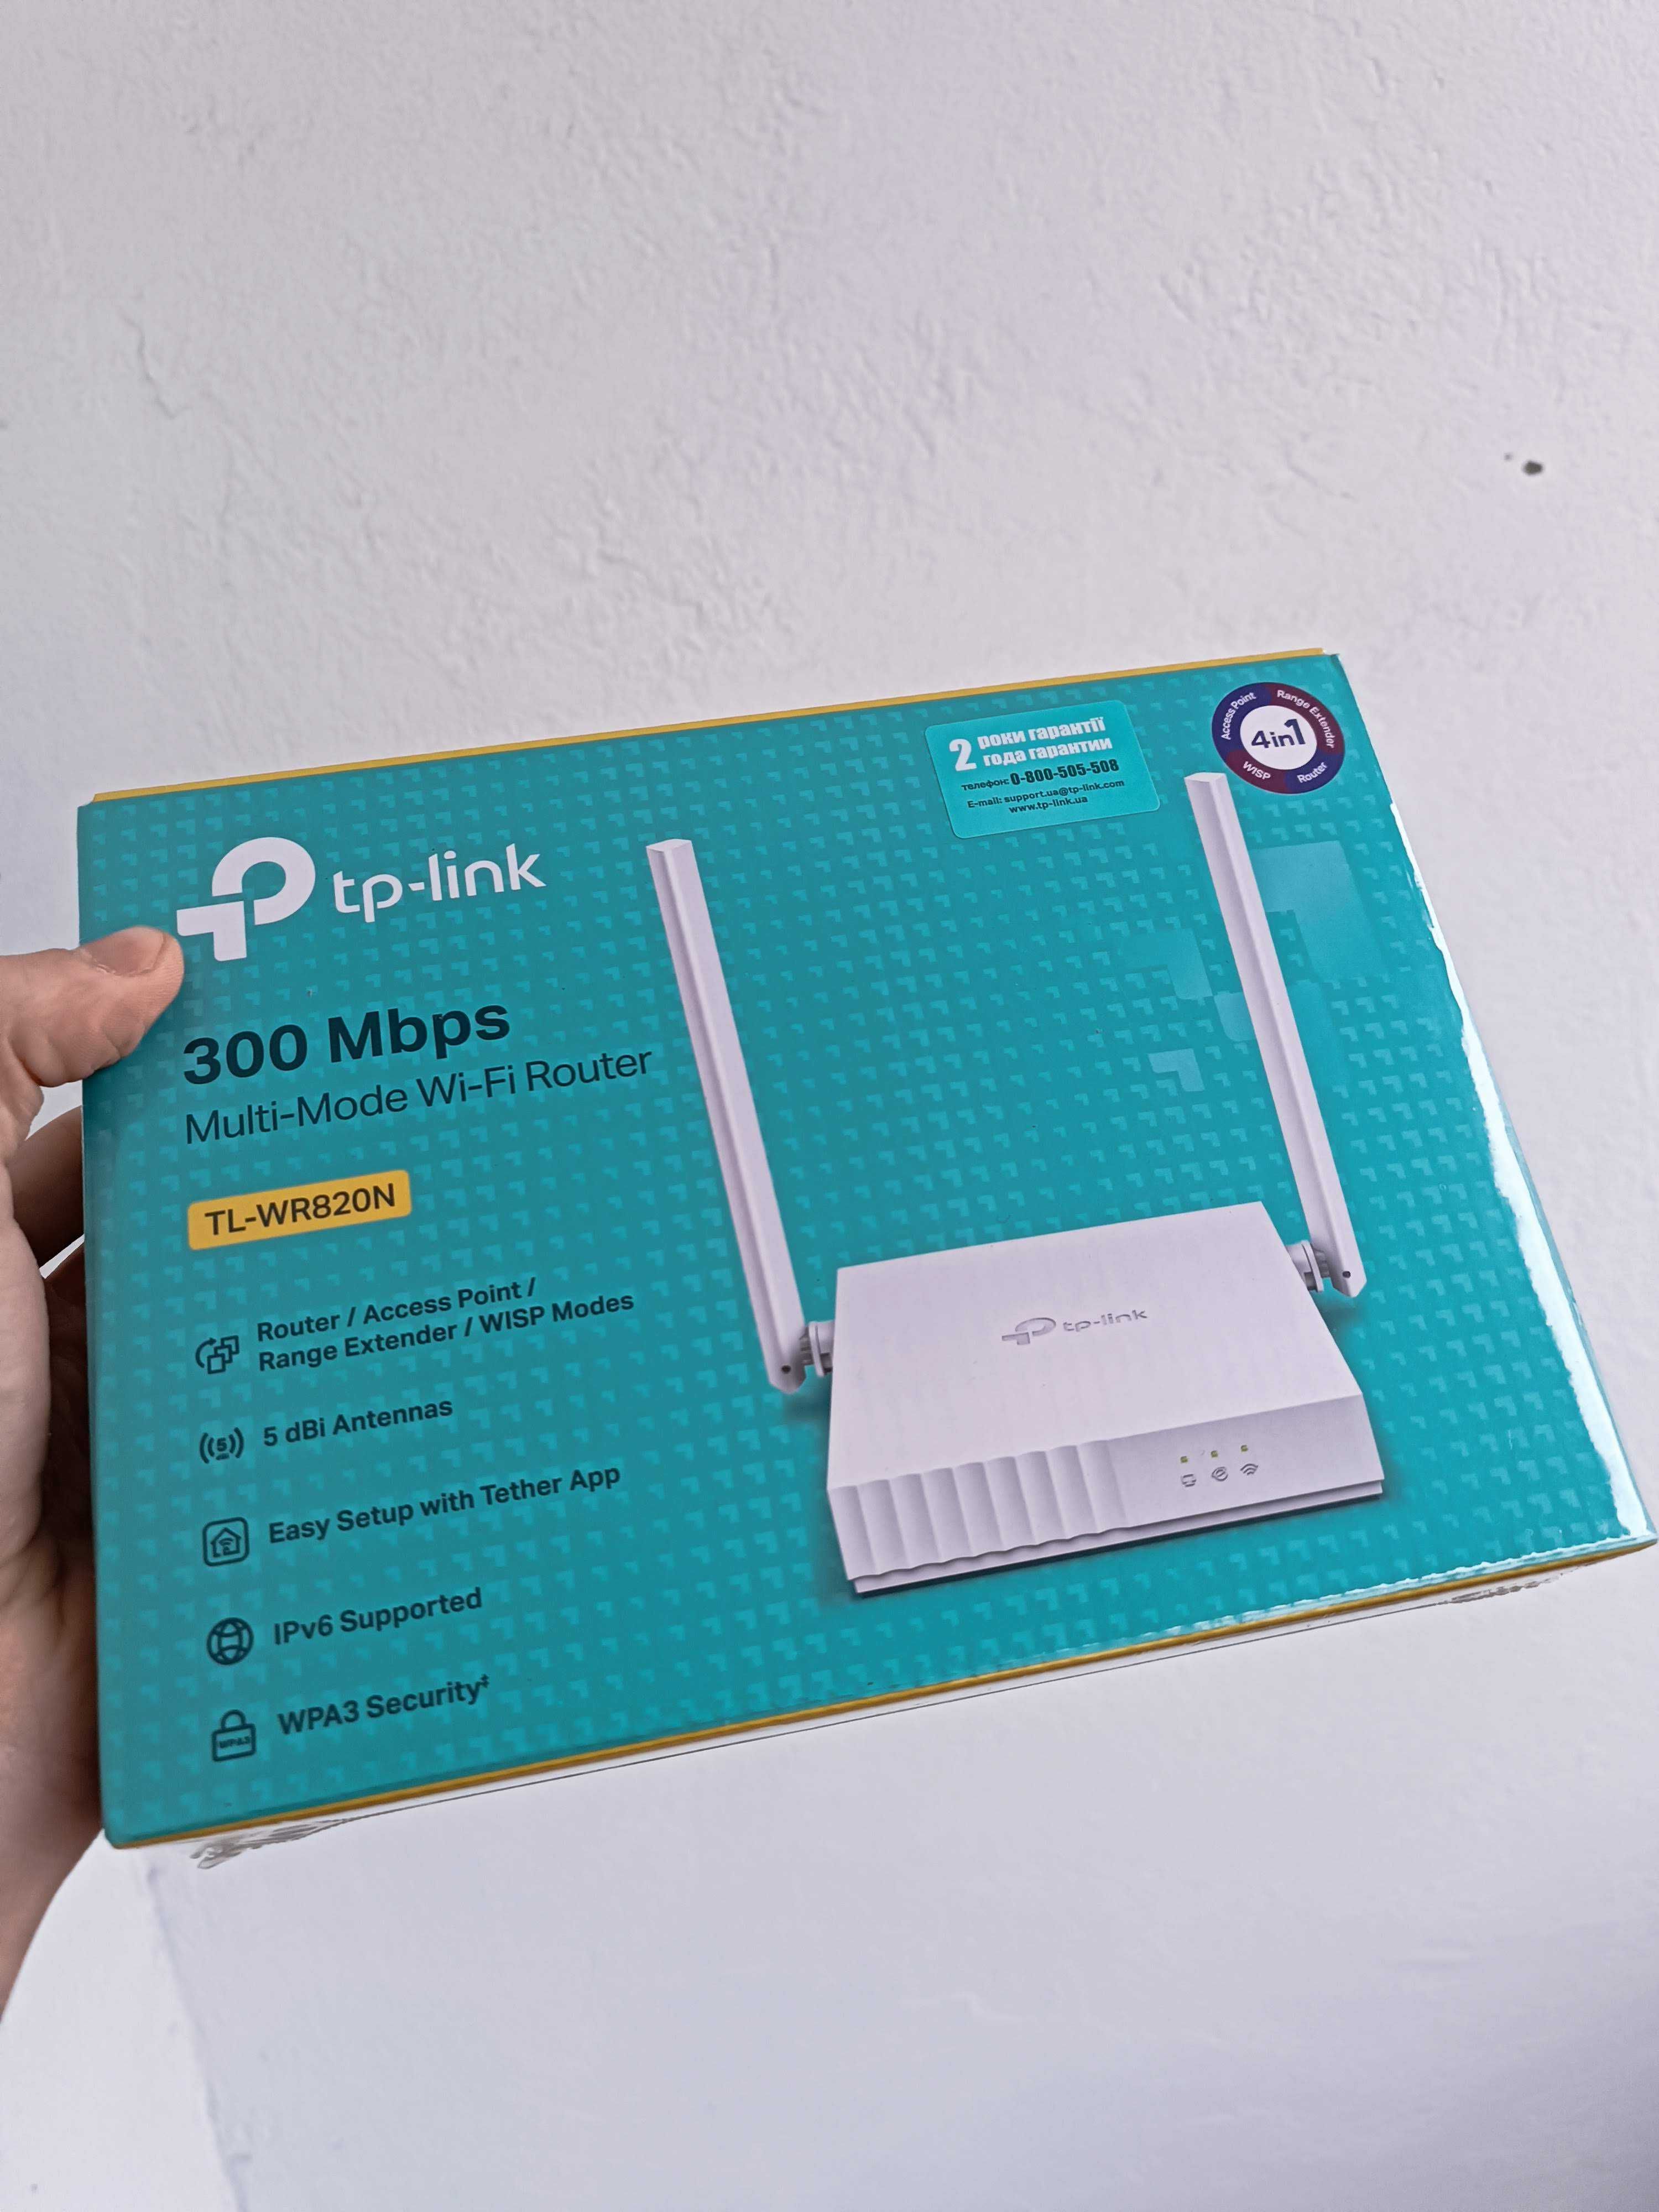 WiFi роутер TP-Link TL-WR820N версія 2. 300мбіт. Новий!